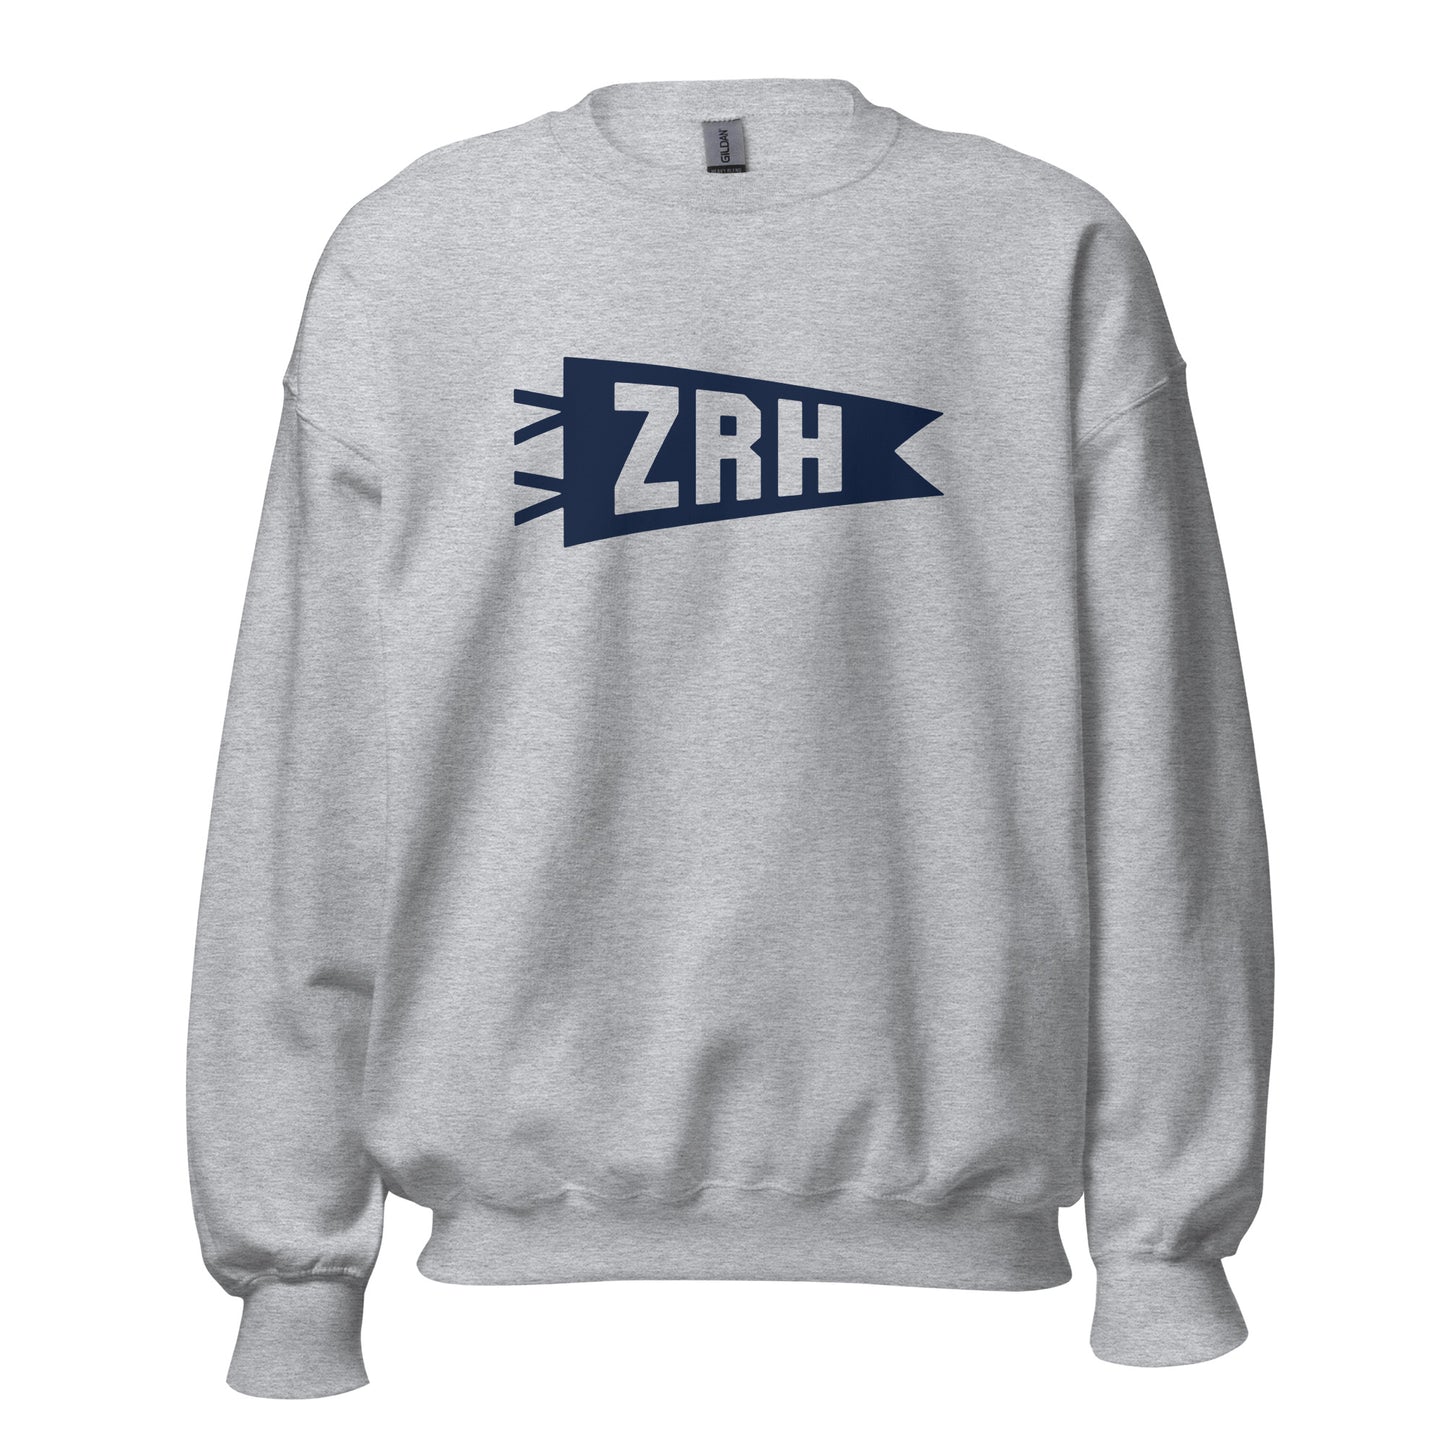 Airport Code Sweatshirt - Navy Blue Graphic • ZRH Zurich • YHM Designs - Image 08